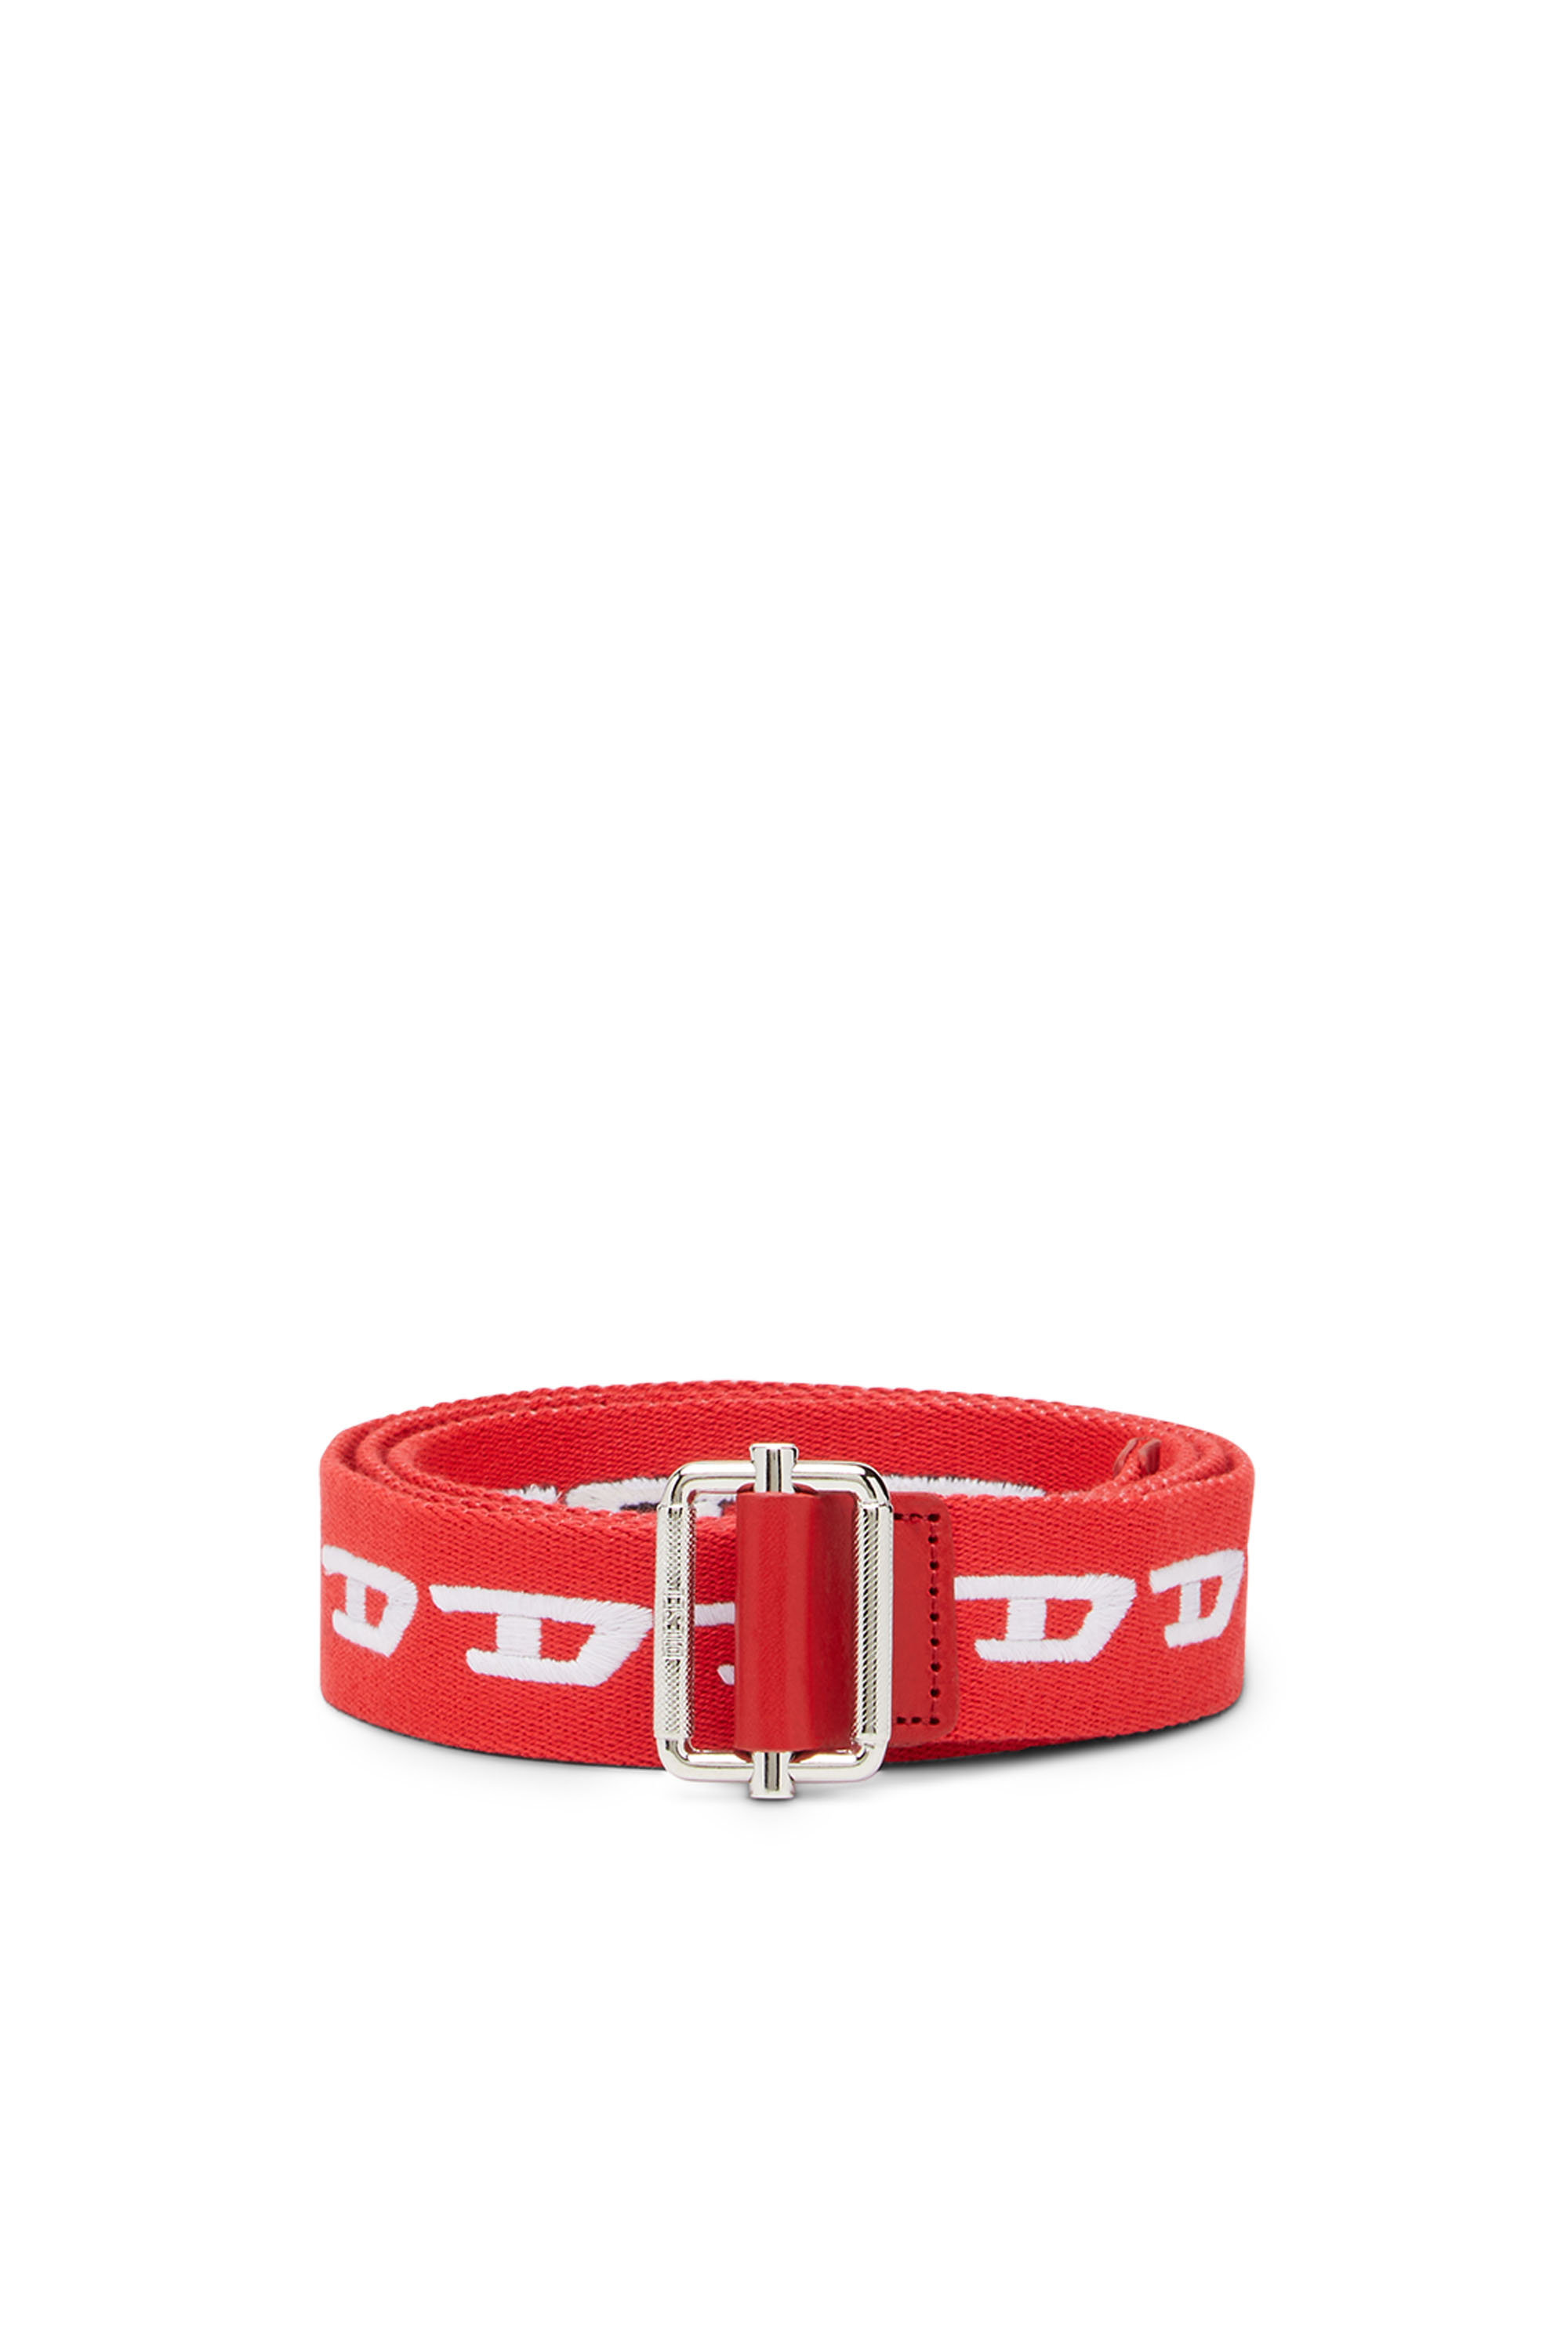 Diesel - B-DIDI, Red - Image 1